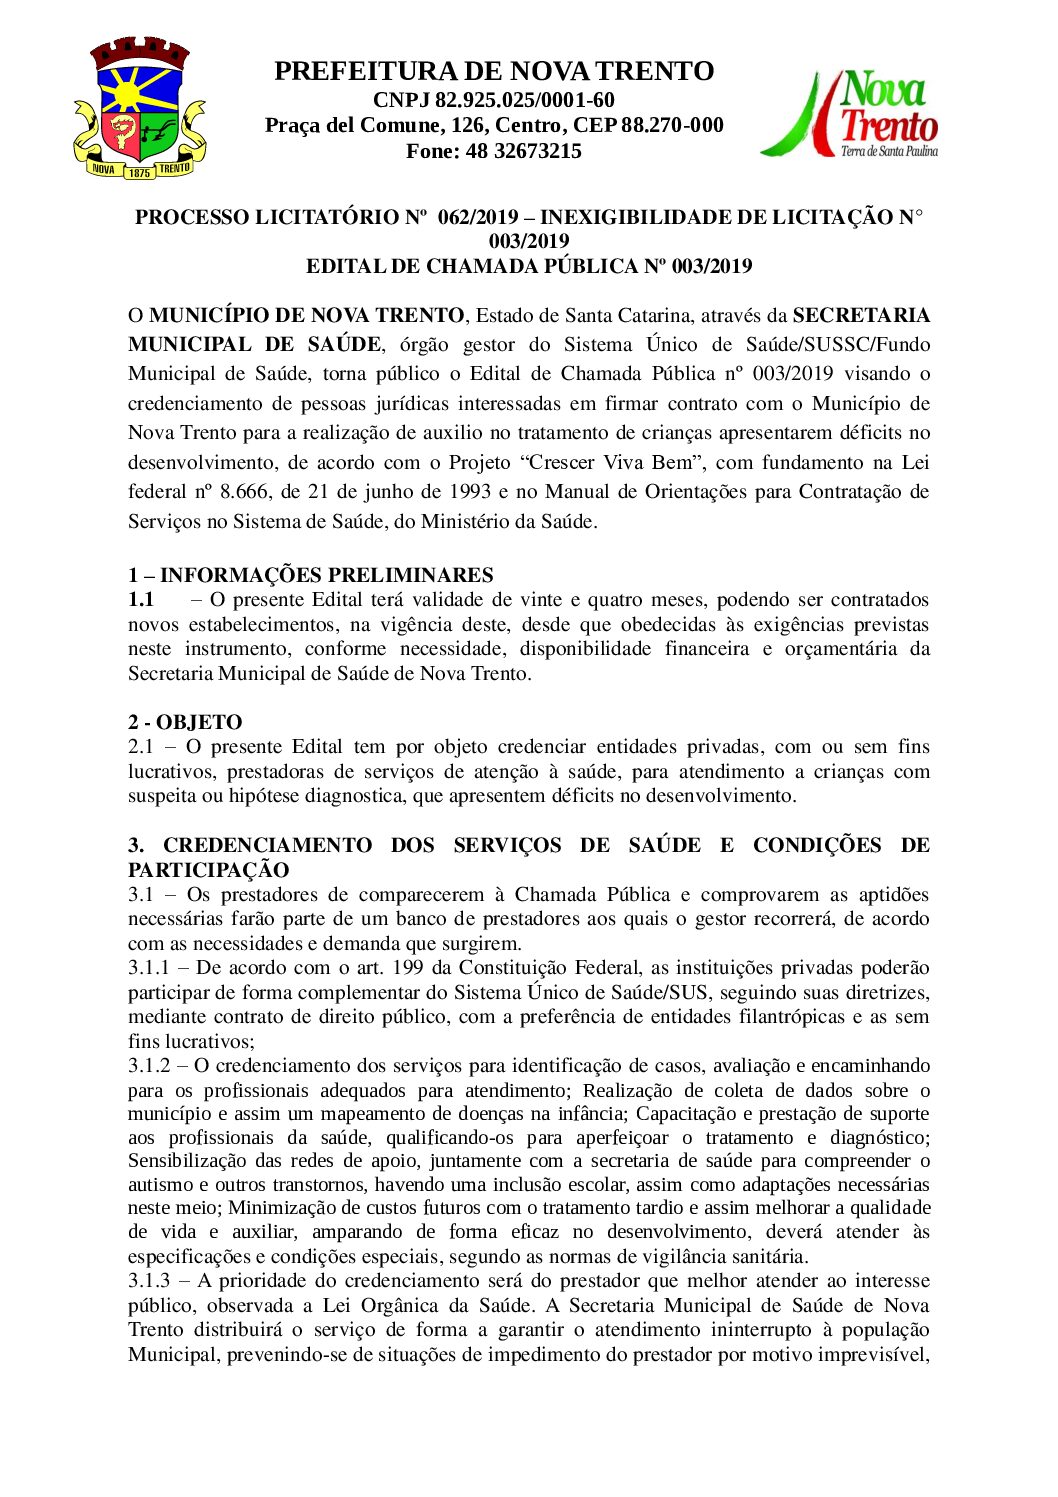 Edital 062 - IL 003 - Credenciamento - Clinica Multipro